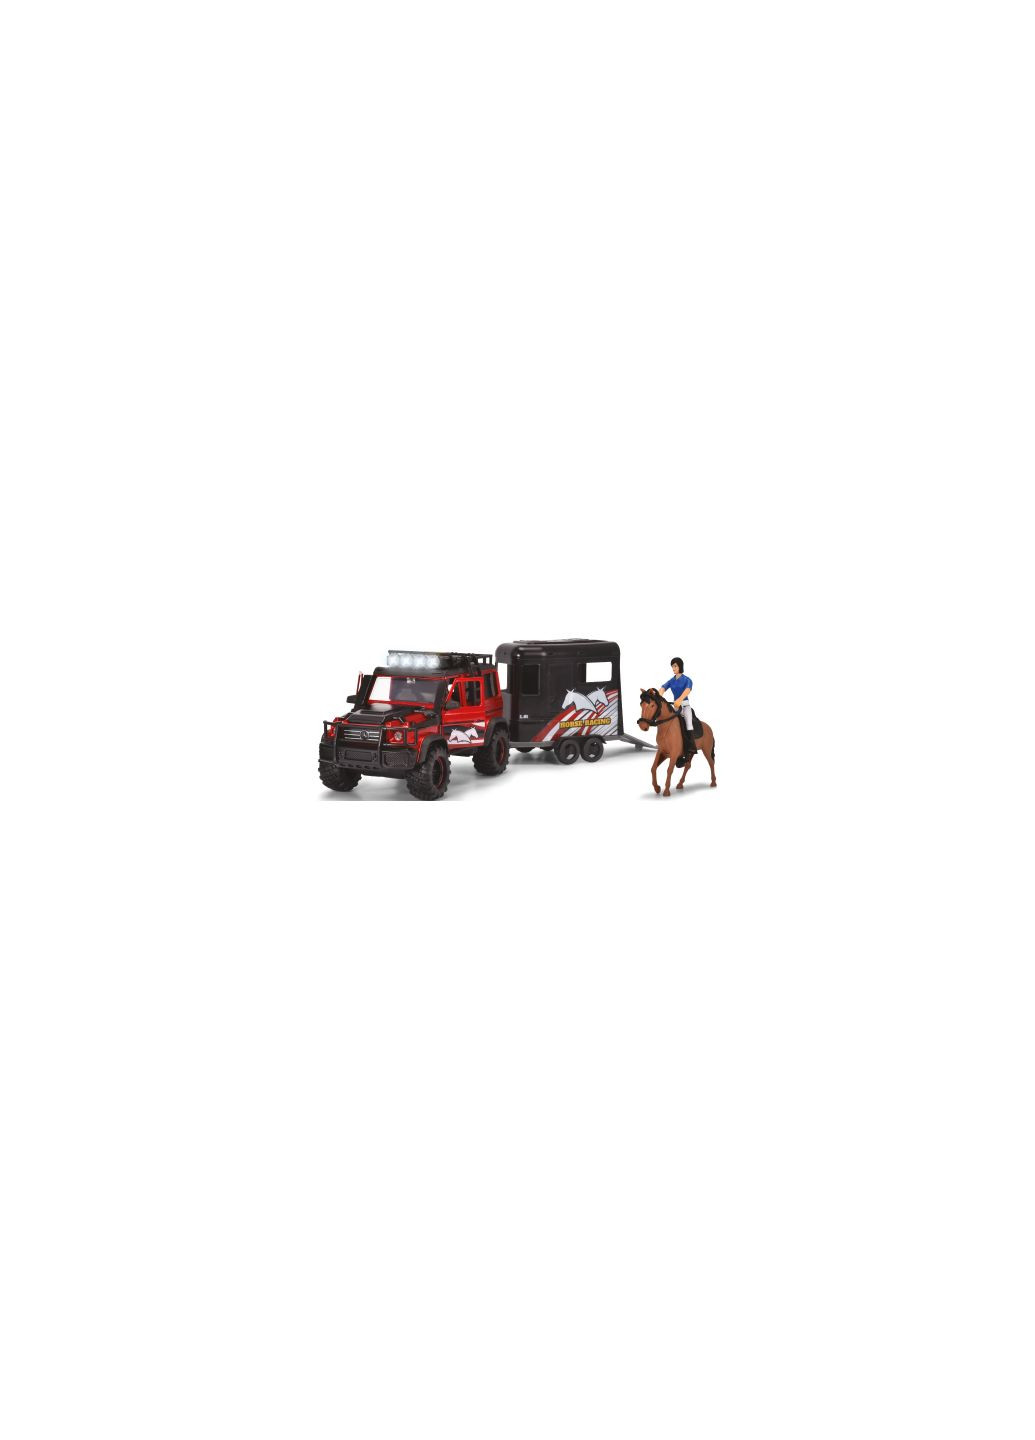 Игровой набор Перевозка лошадей с внедорожником 42 см и фигурками (3837018) Dickie toys перевезення коней з позашляховиком 42 см та фігурк (275456727)